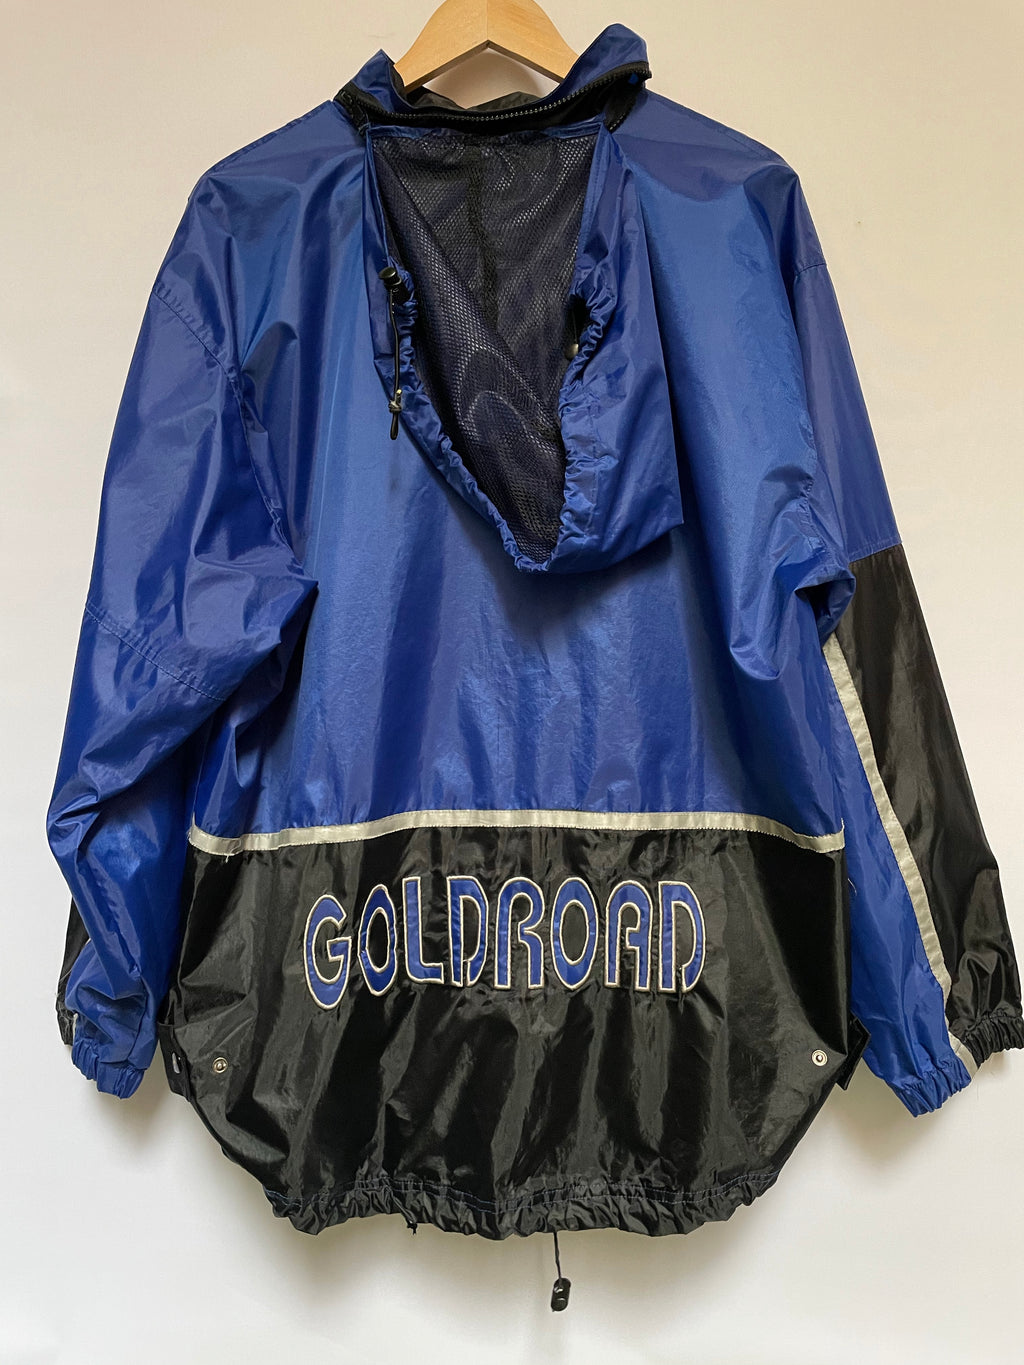 Gold Road Spray Jacket - AS IS - wear